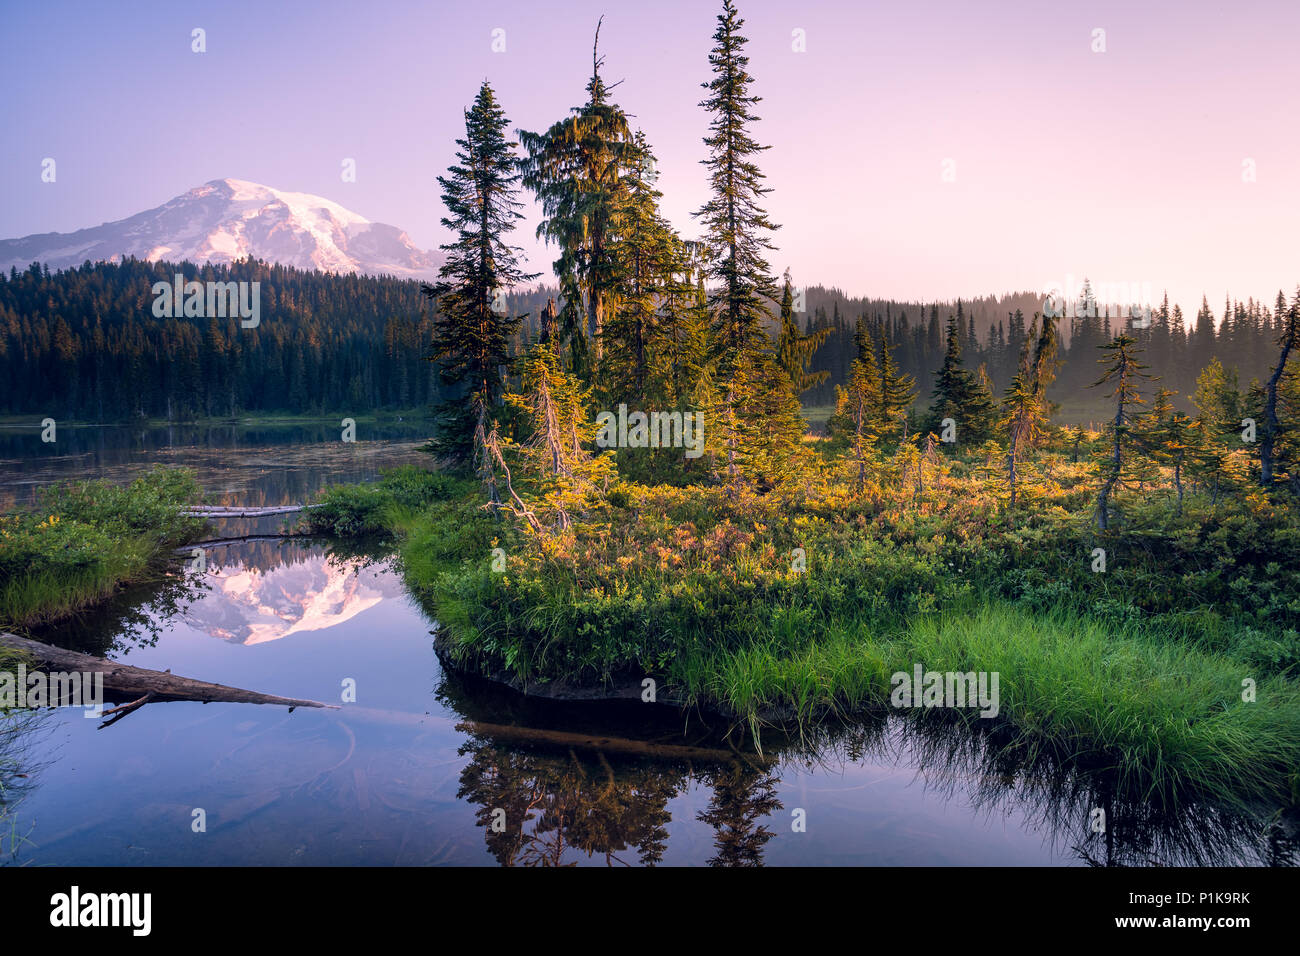 Bergspiegelung in einem See, Mount Rainier National Park, Washington, USA Stockfoto